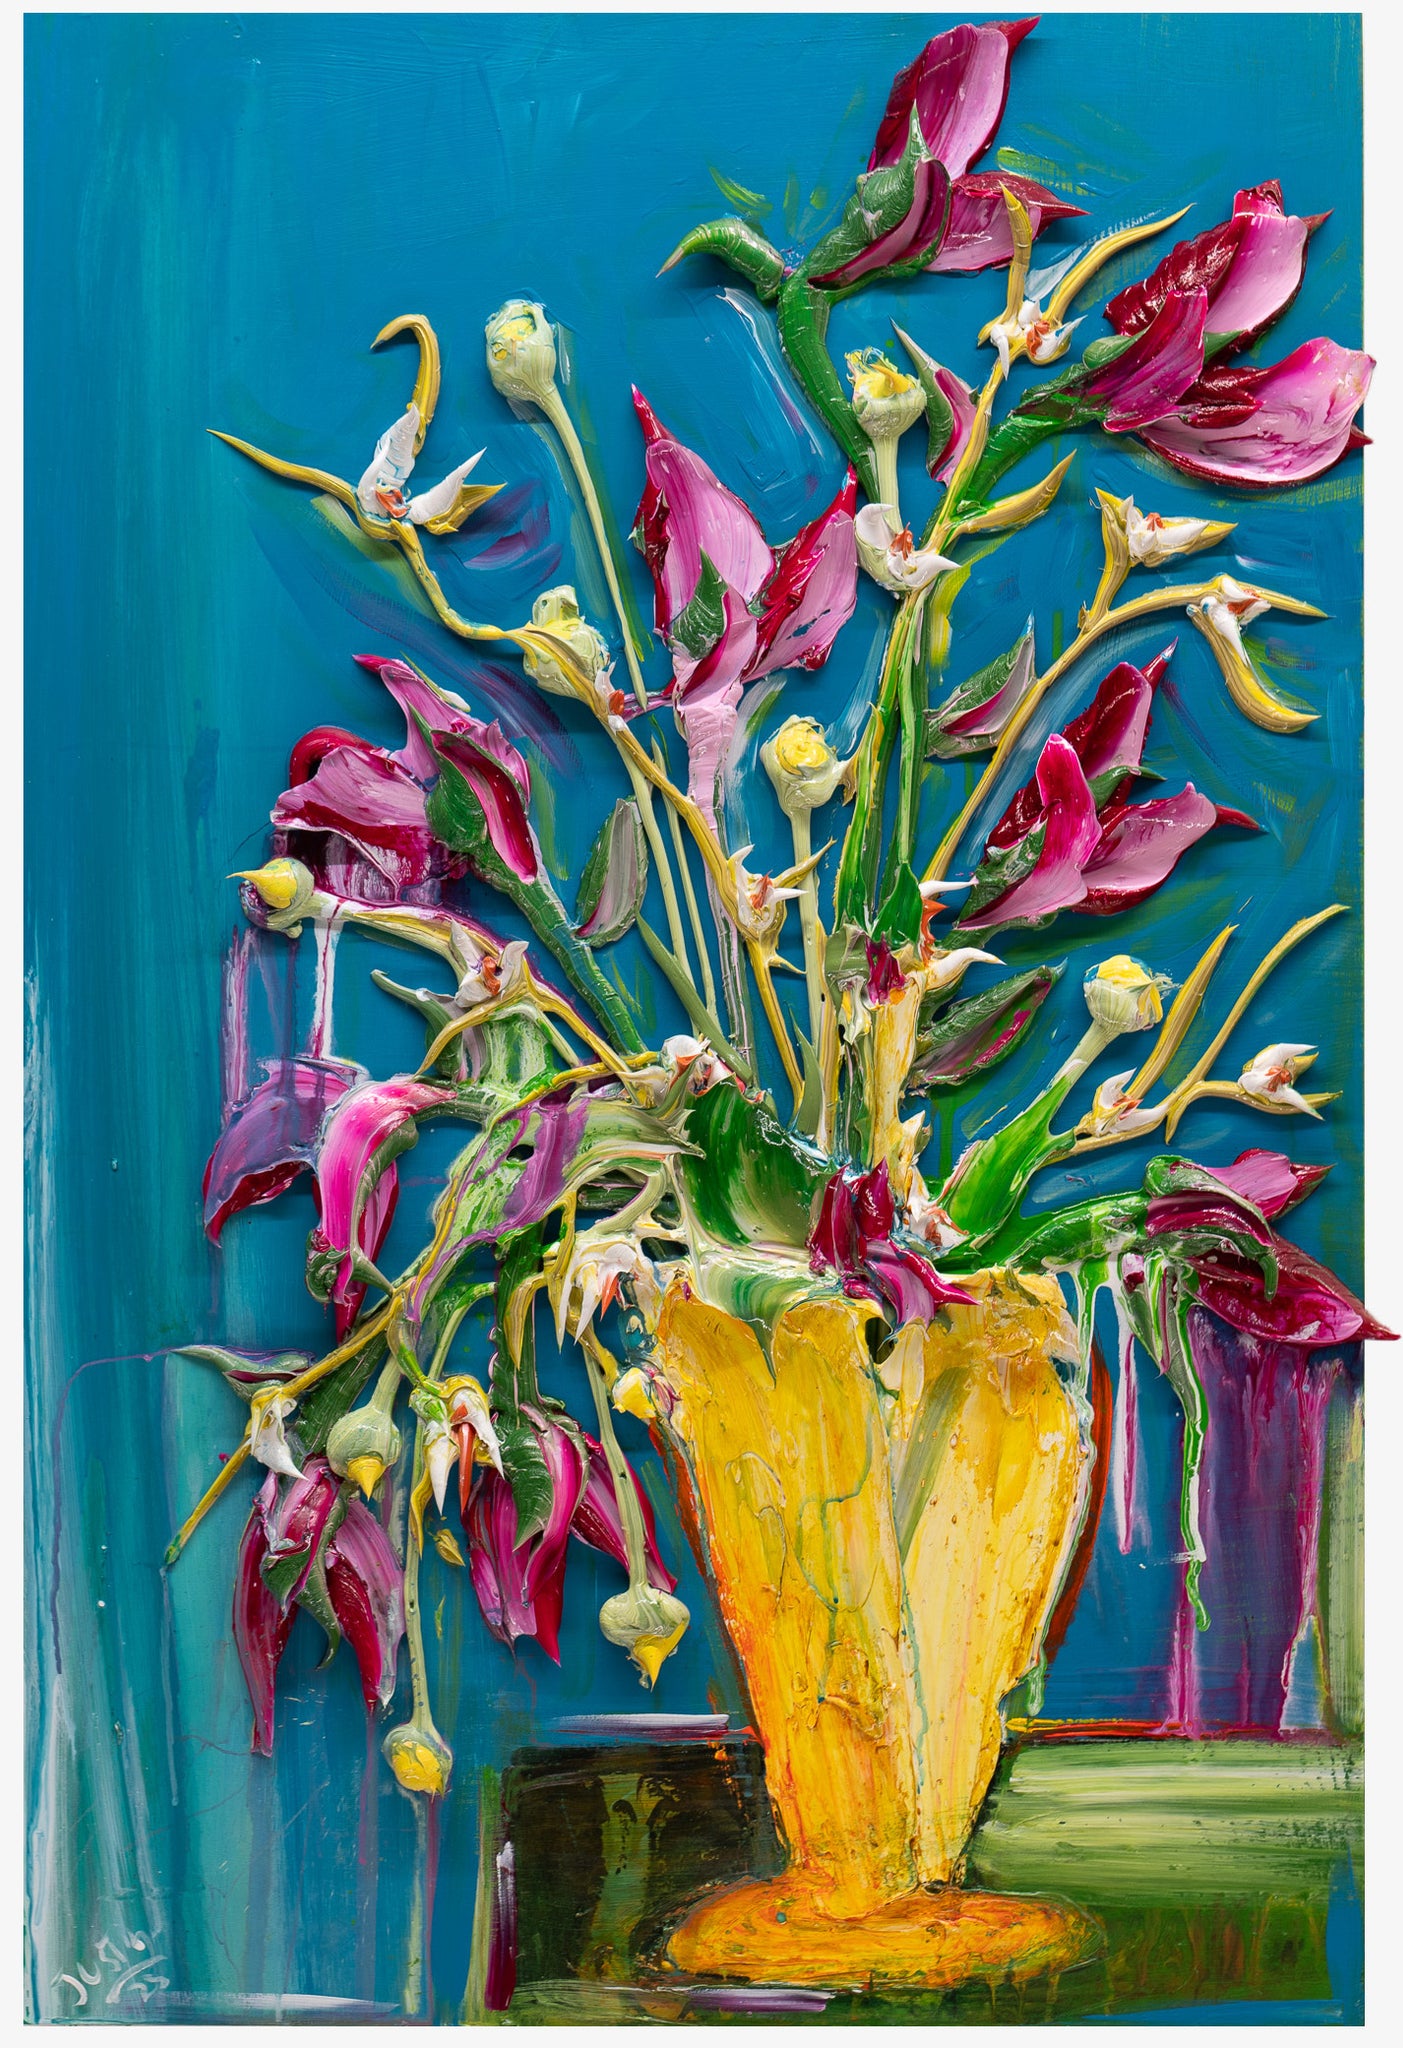 Vase Floral 06, 24x36